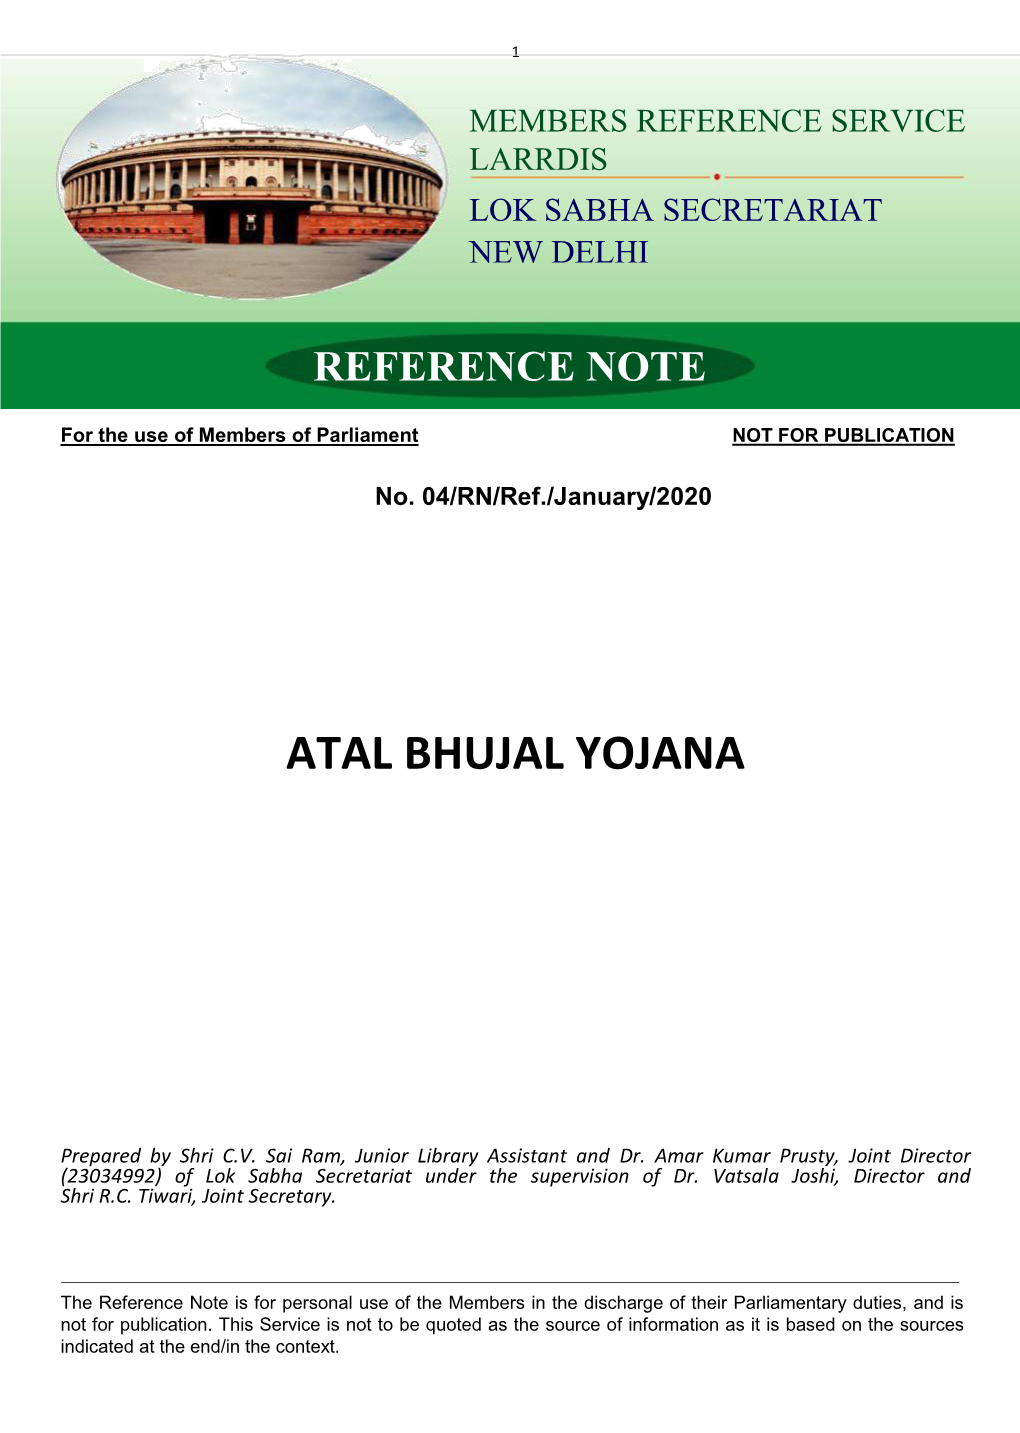 Atal Bhujal Yojana